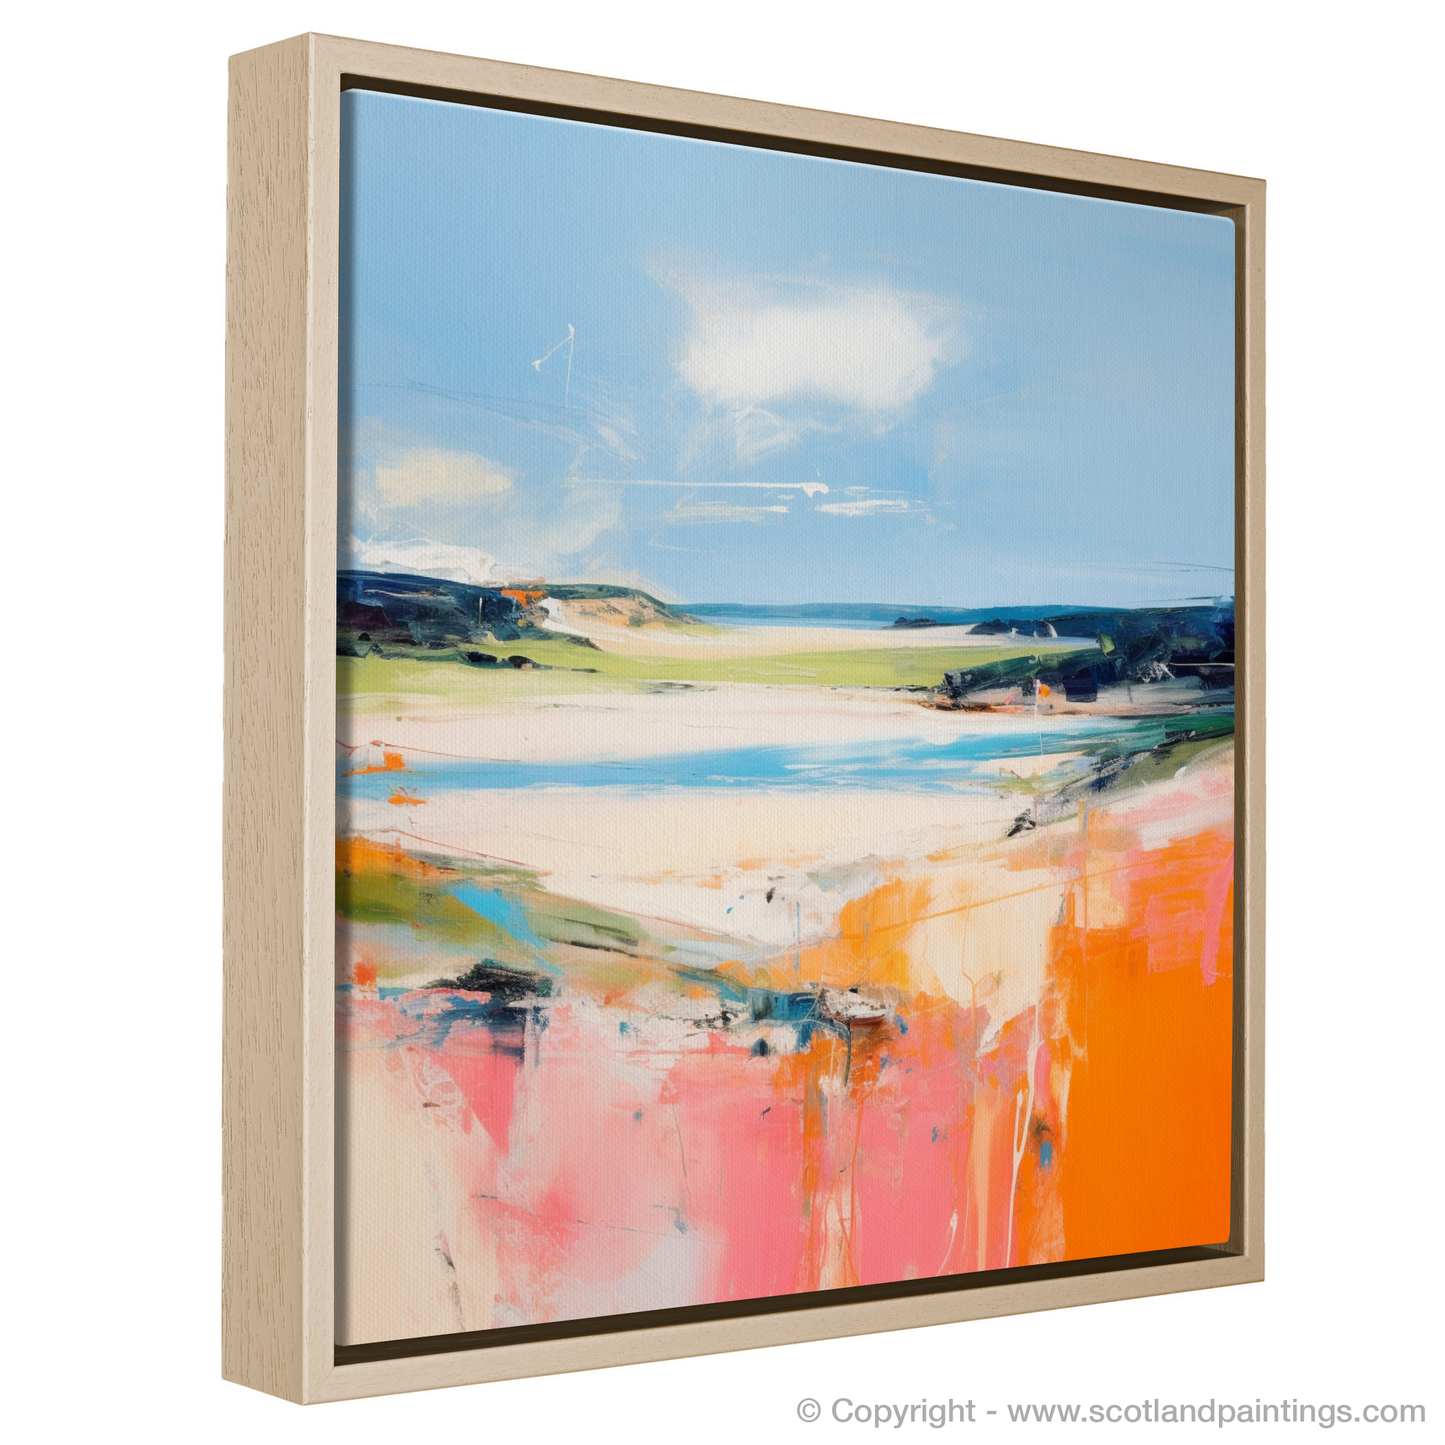 Painting and Art Print of Lunan Bay, Angus in summer entitled "Lunan Bay Summer Serenade".